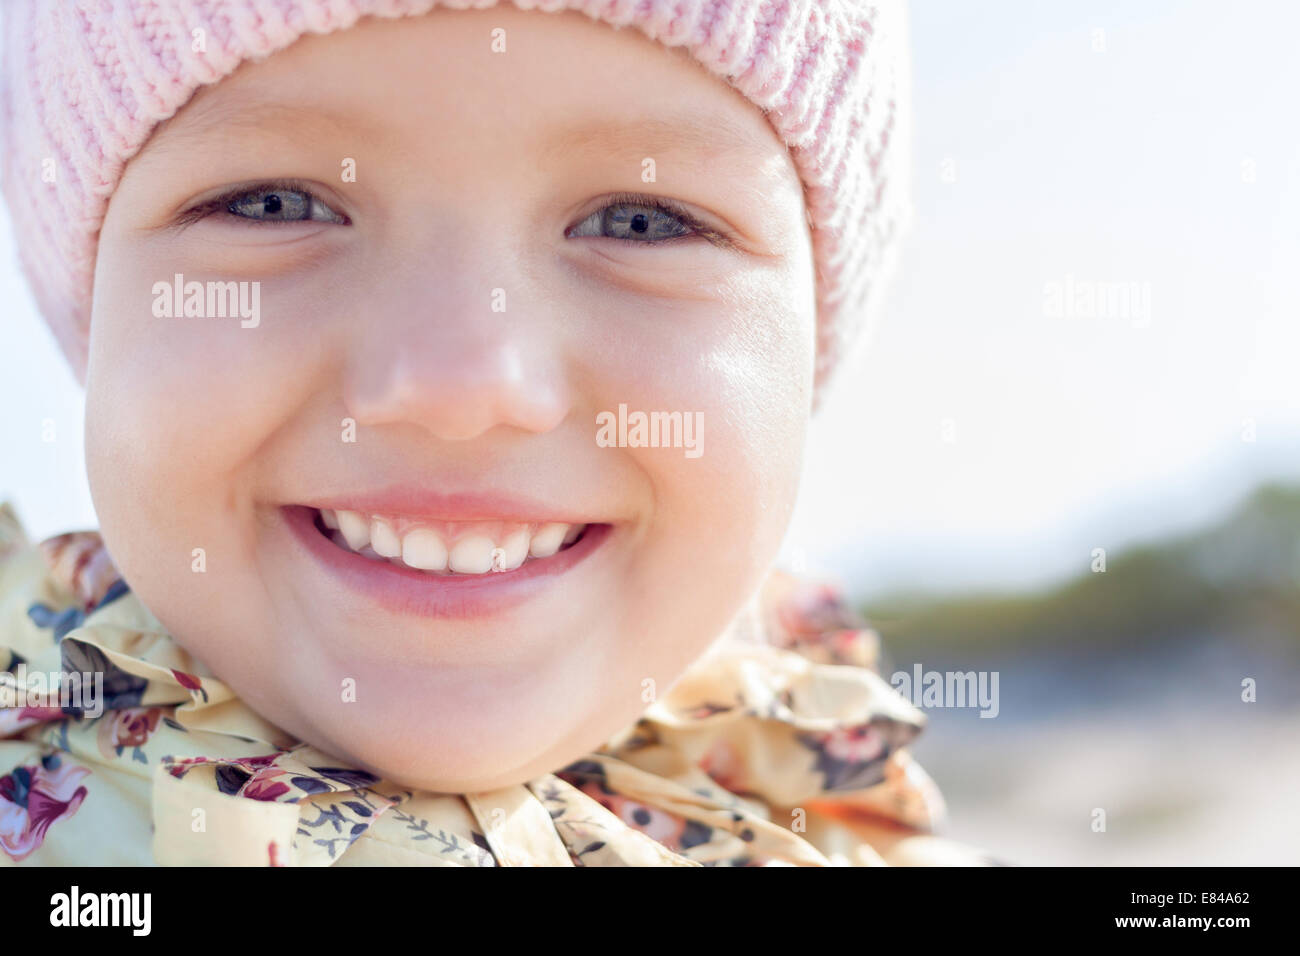 Enfant heureux sourire petite fille close up outdoor Banque D'Images